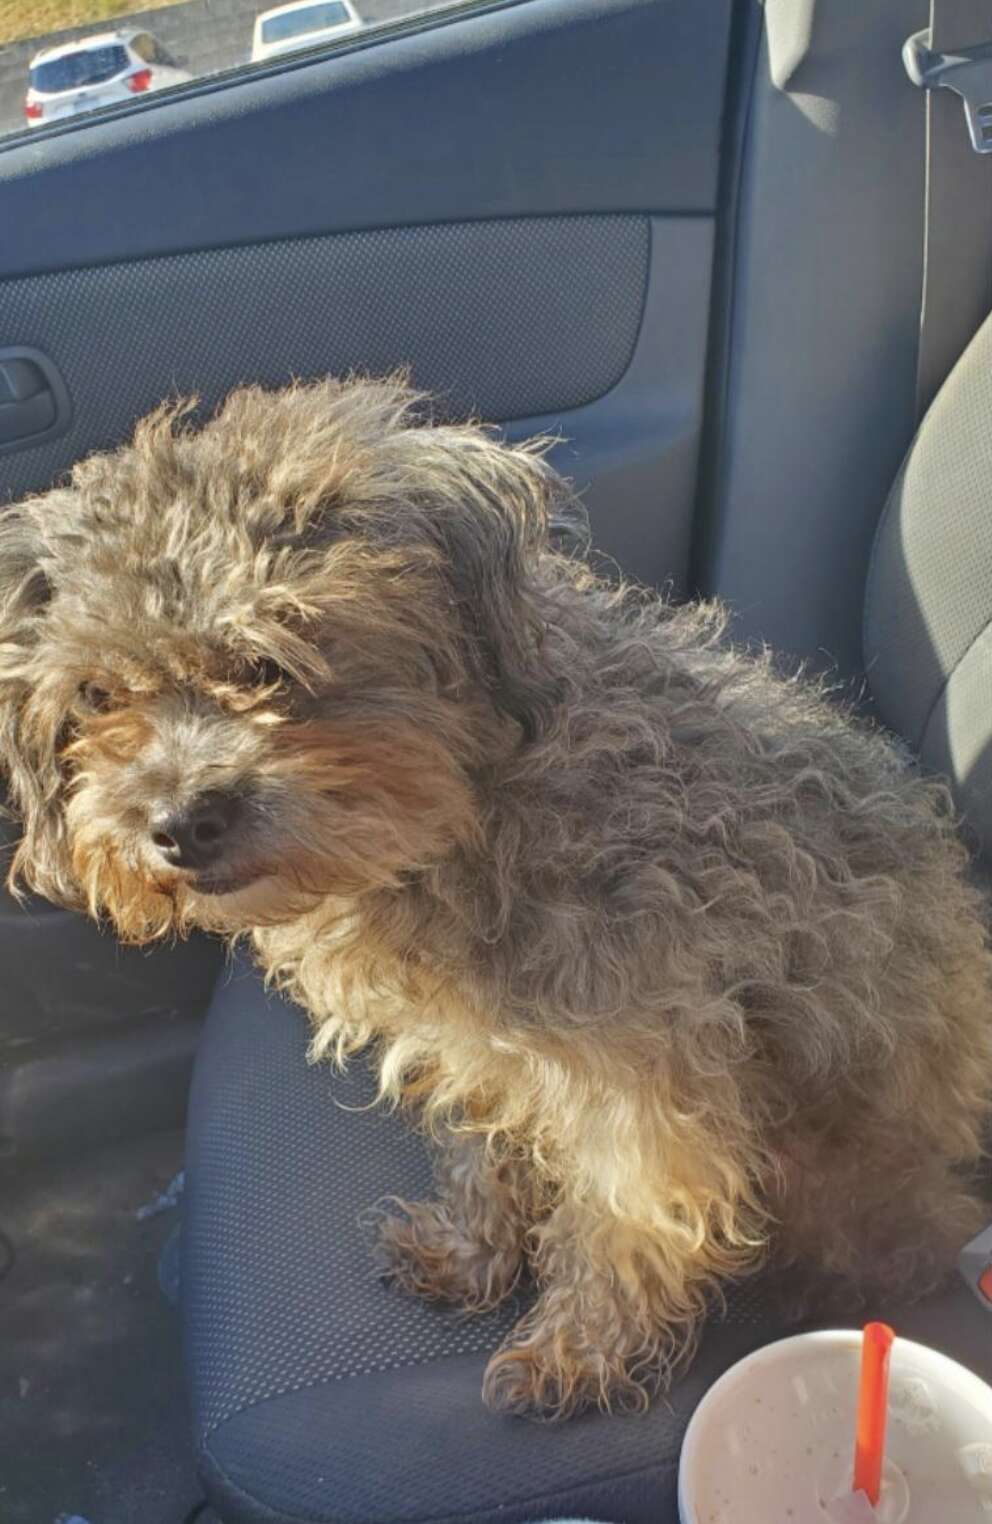 A scruffy dog sits in a car.